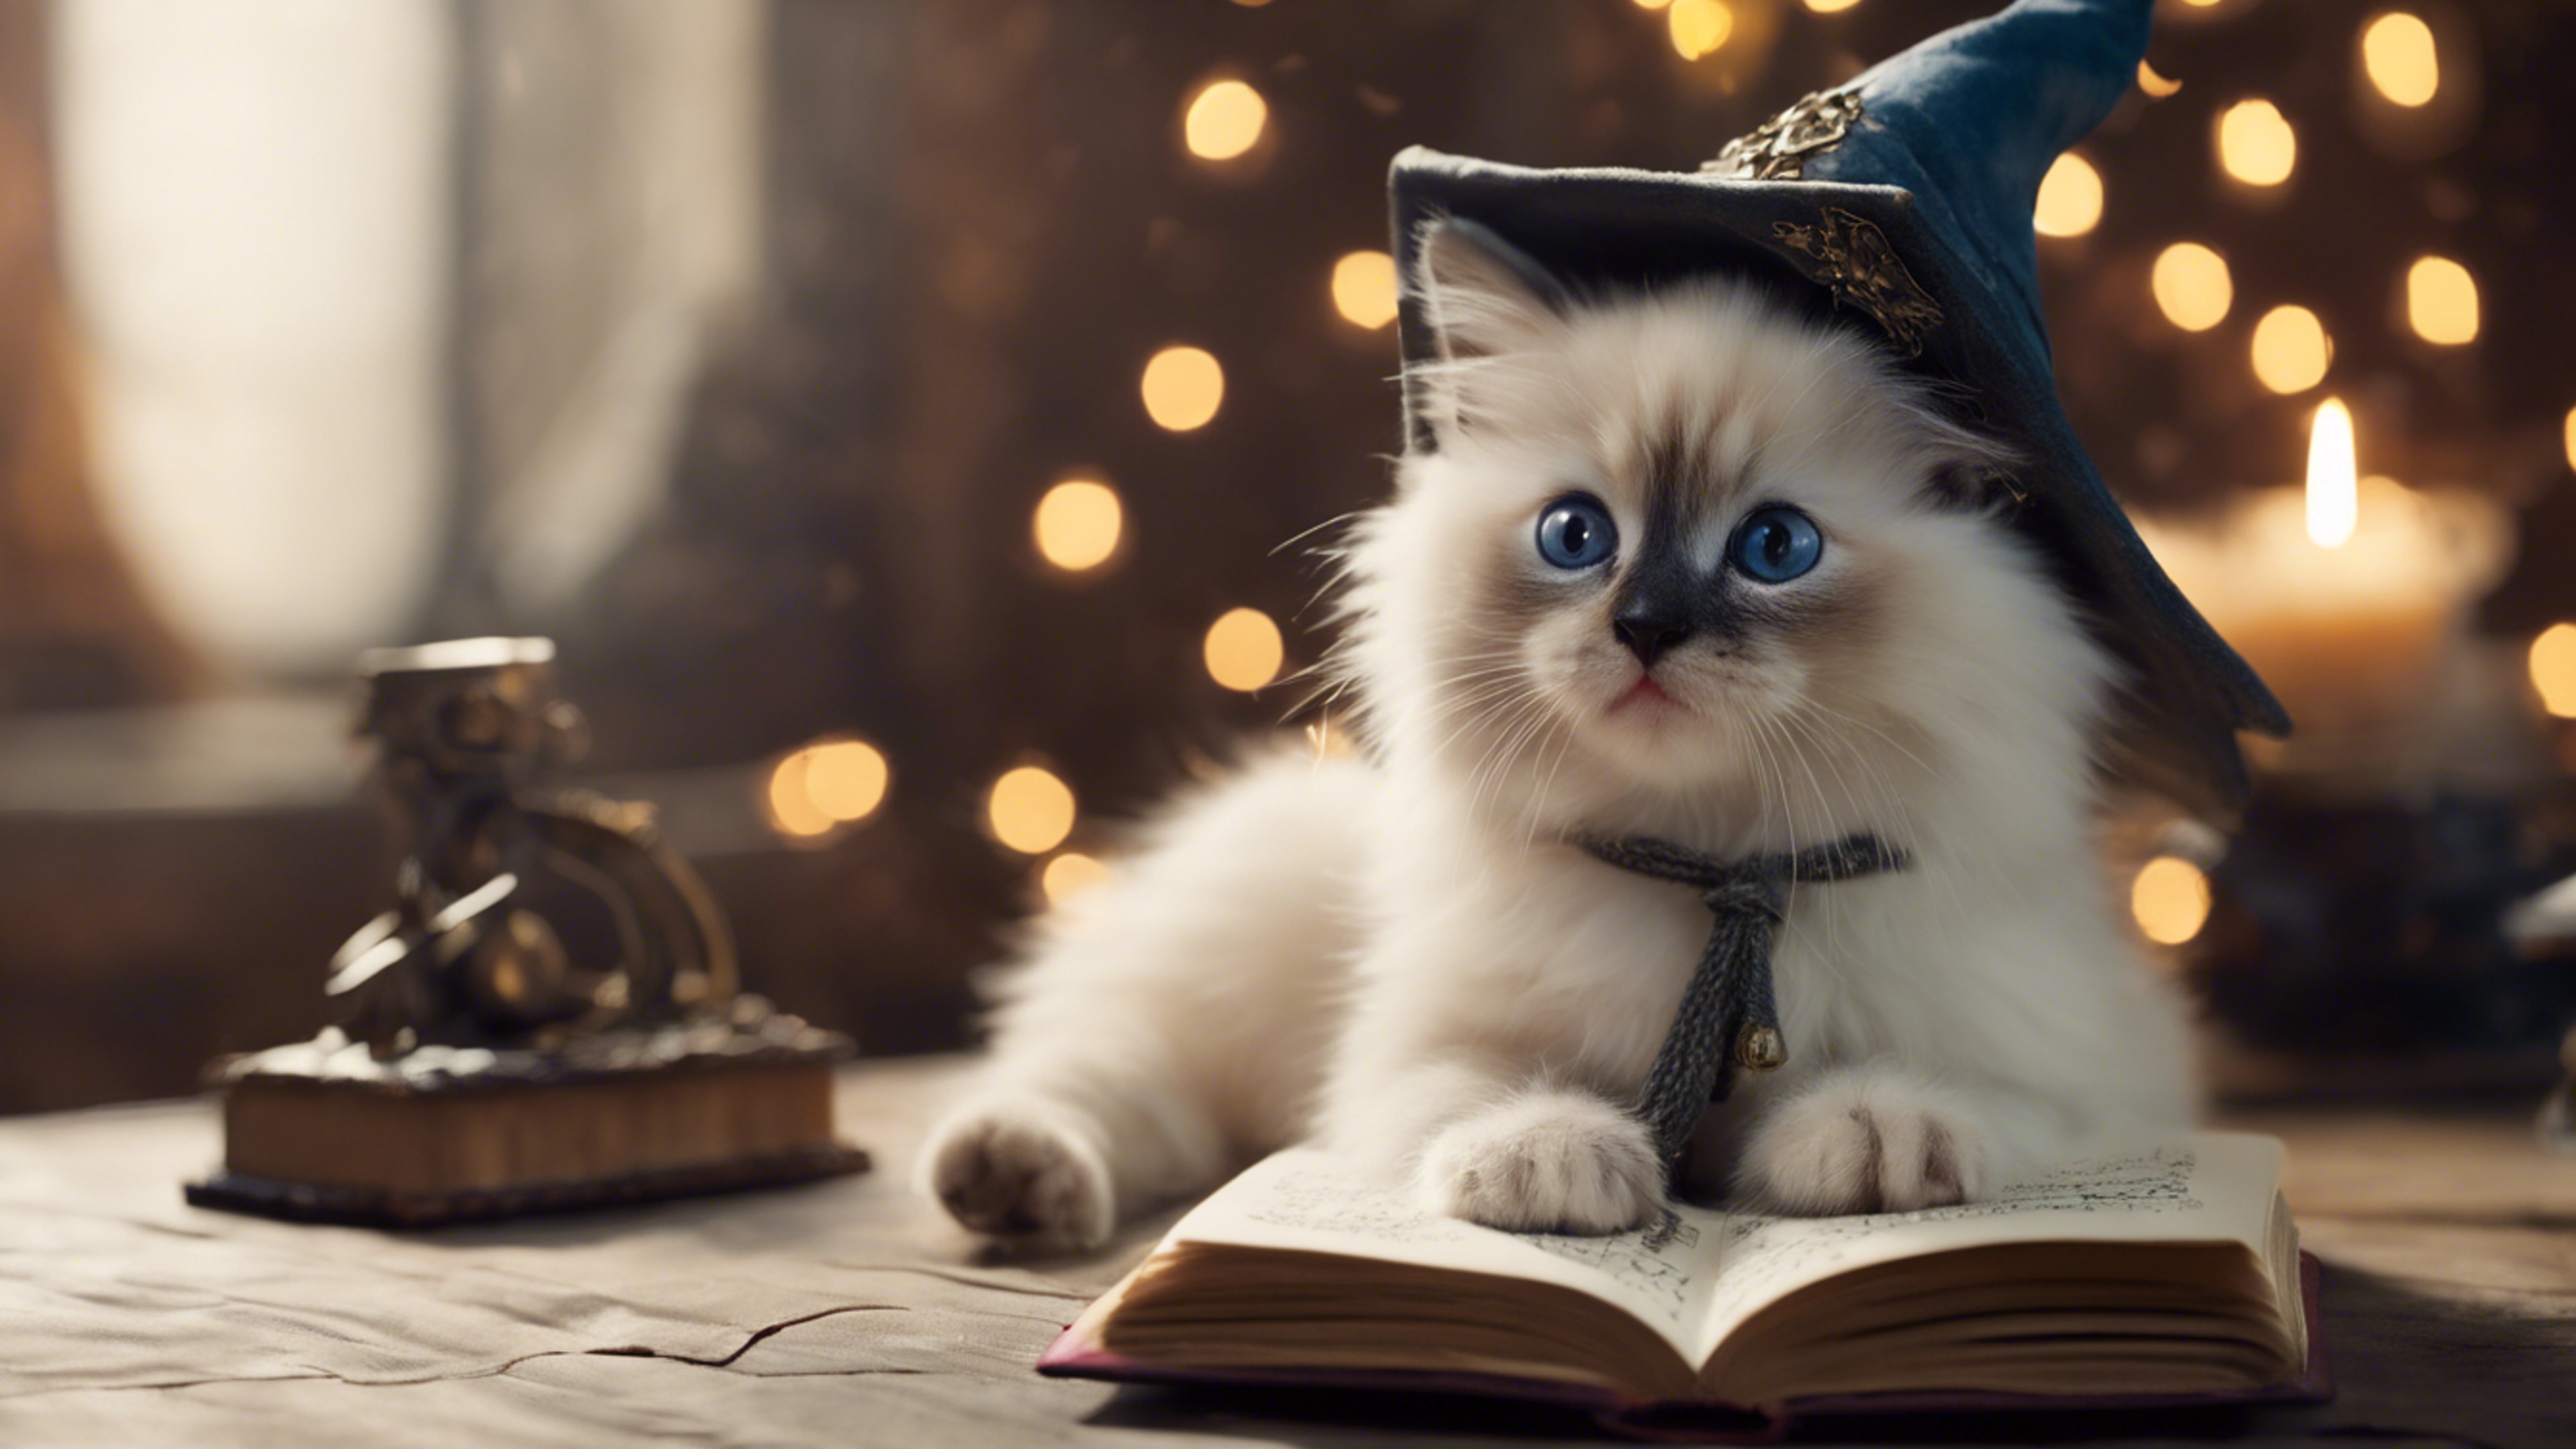 A Ragdoll kitten wearing a wizard hat, a spellbook open in front of it. Wallpaper[bd84ae8594bf4806934f]